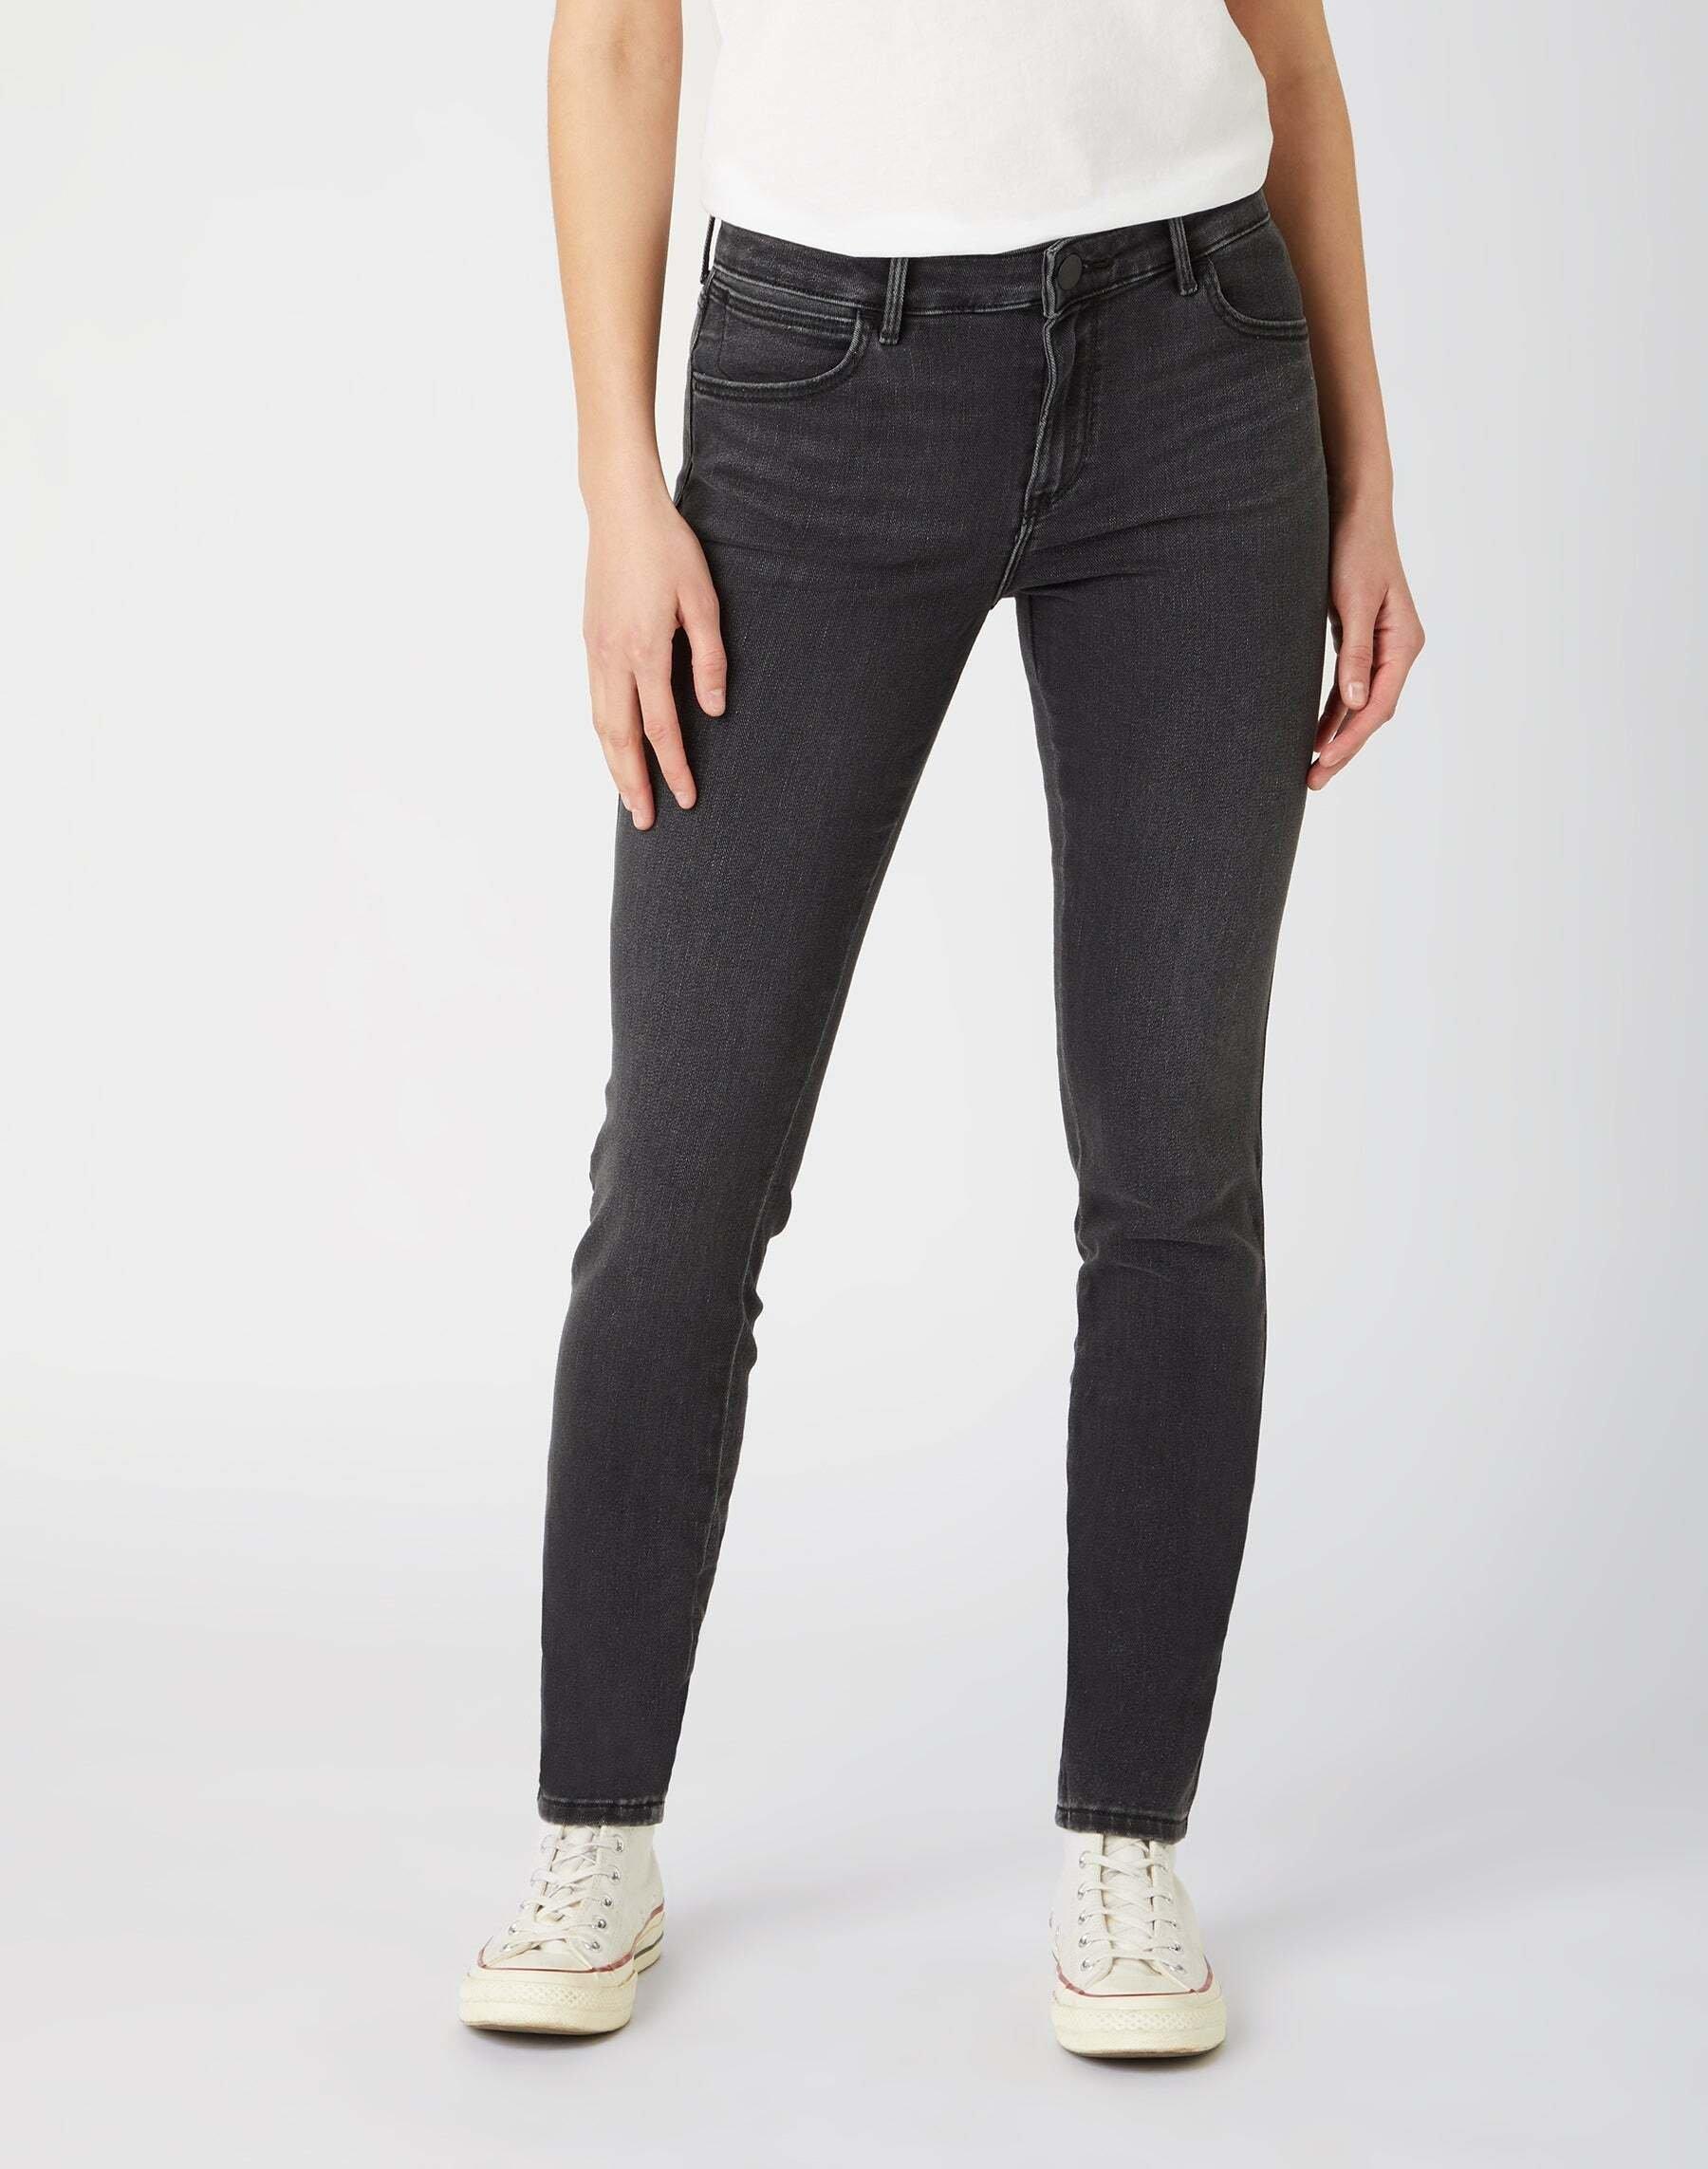 Jeans Skinny Fit Skinny Damen Schwarz Leicht L34/W30 von Wrangler